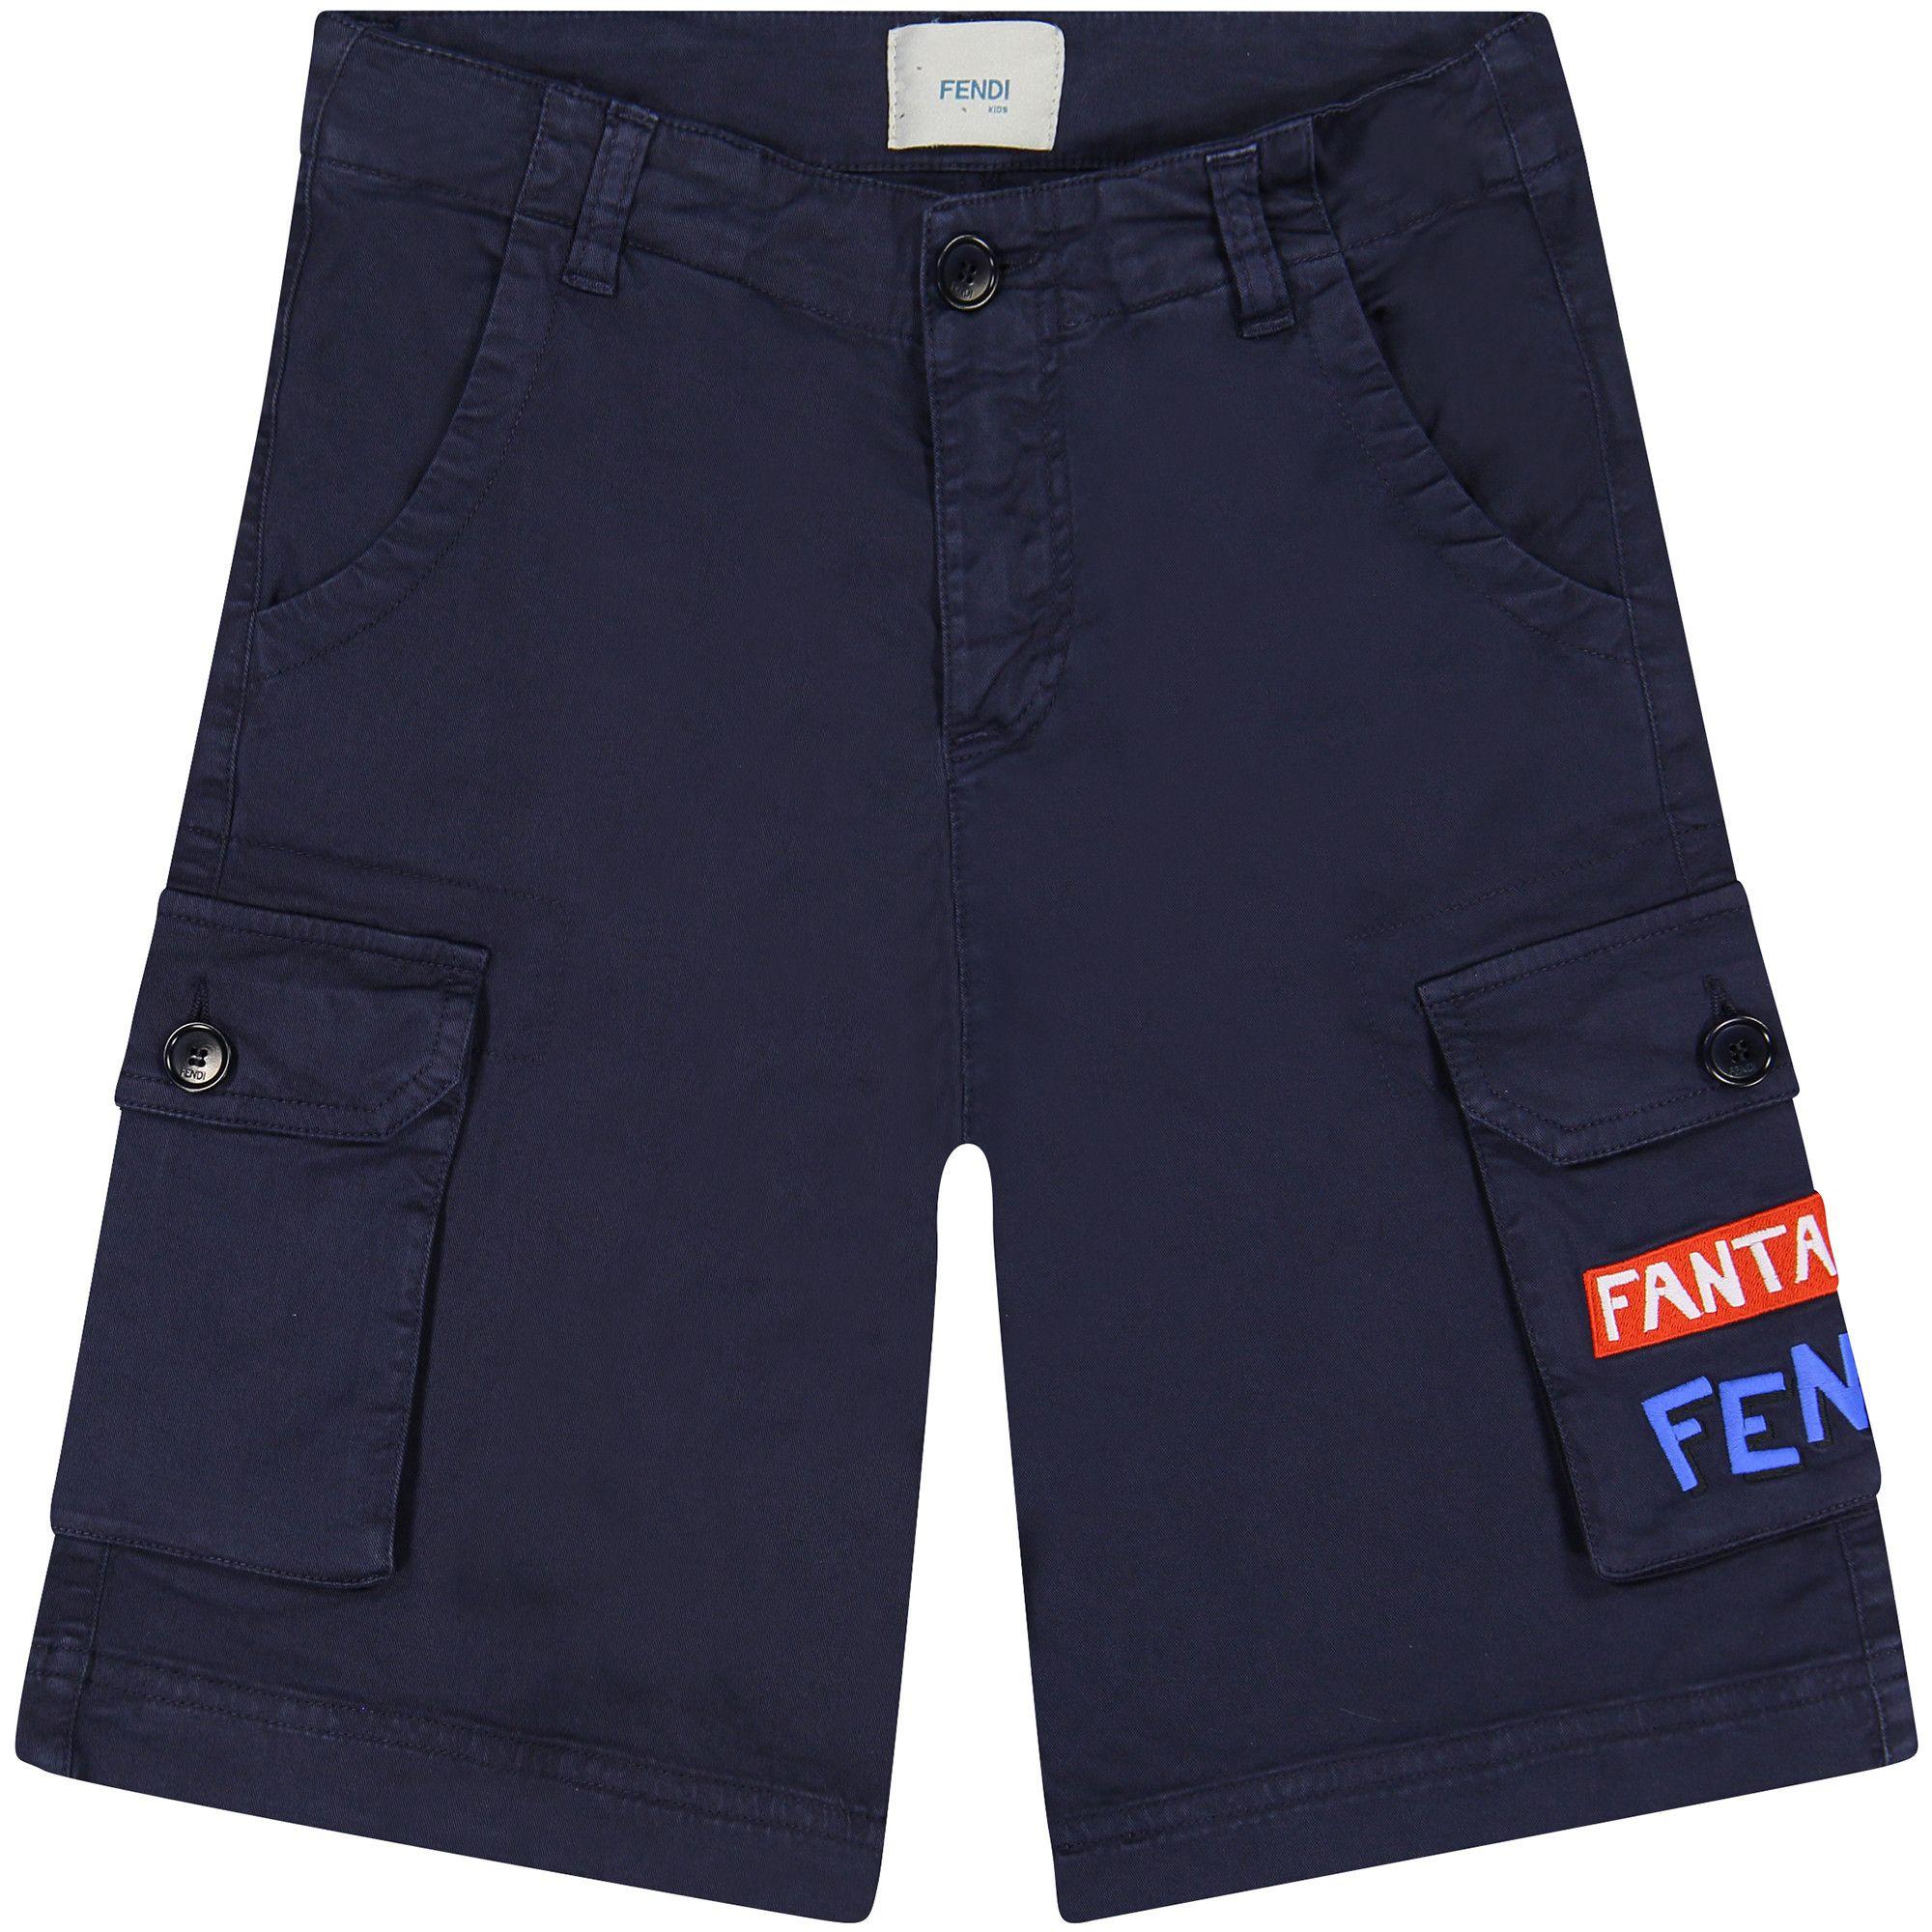 Blue Fendi Logo - Fendi Boys Cargo Shorts in Dark Blue with 'Fantastic Fendi' Logo